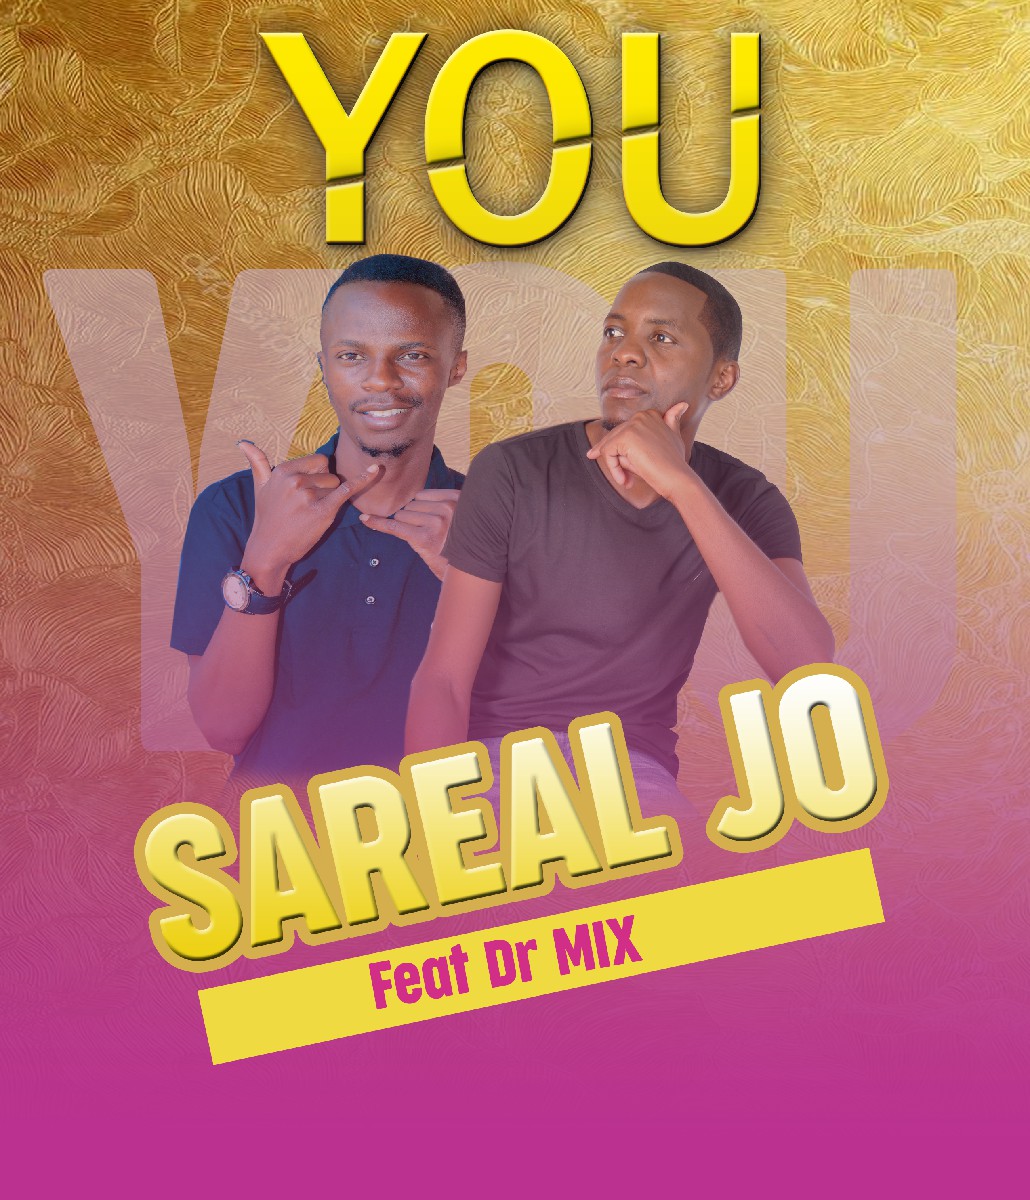 Sareal Jo ft. Dr. Mix - You